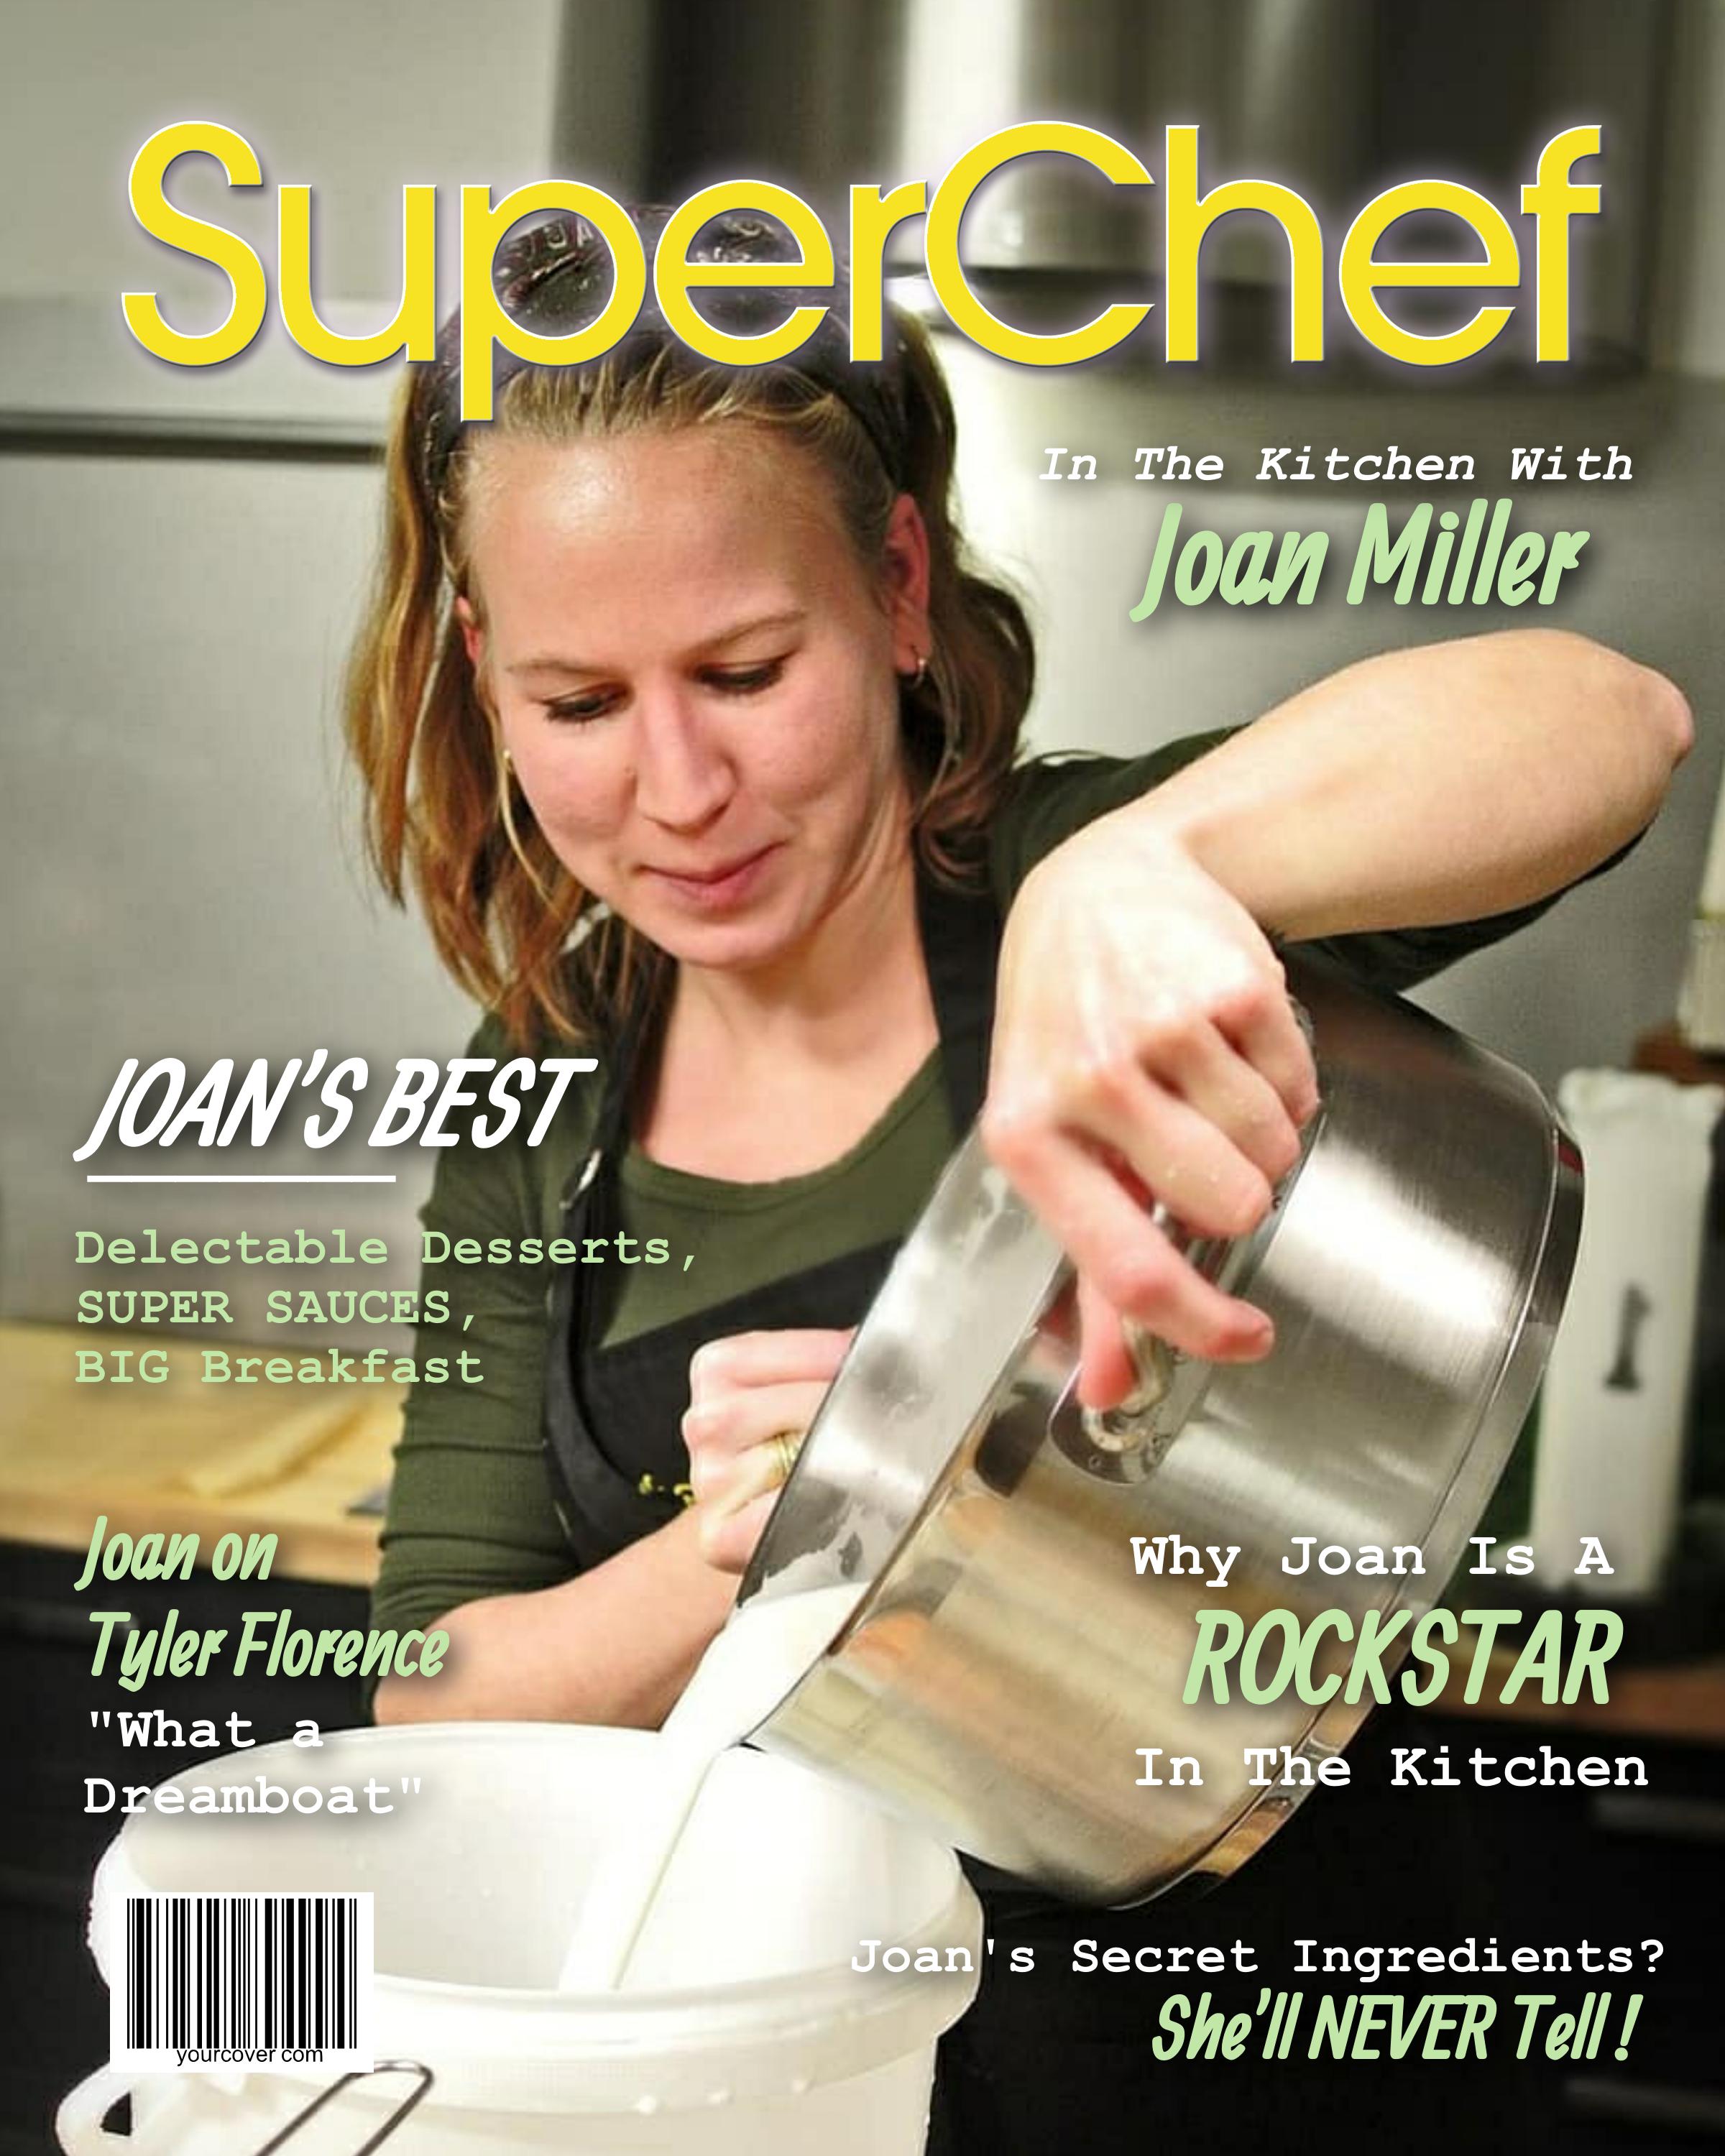 SuperChef Personalized Magazine Cover Template